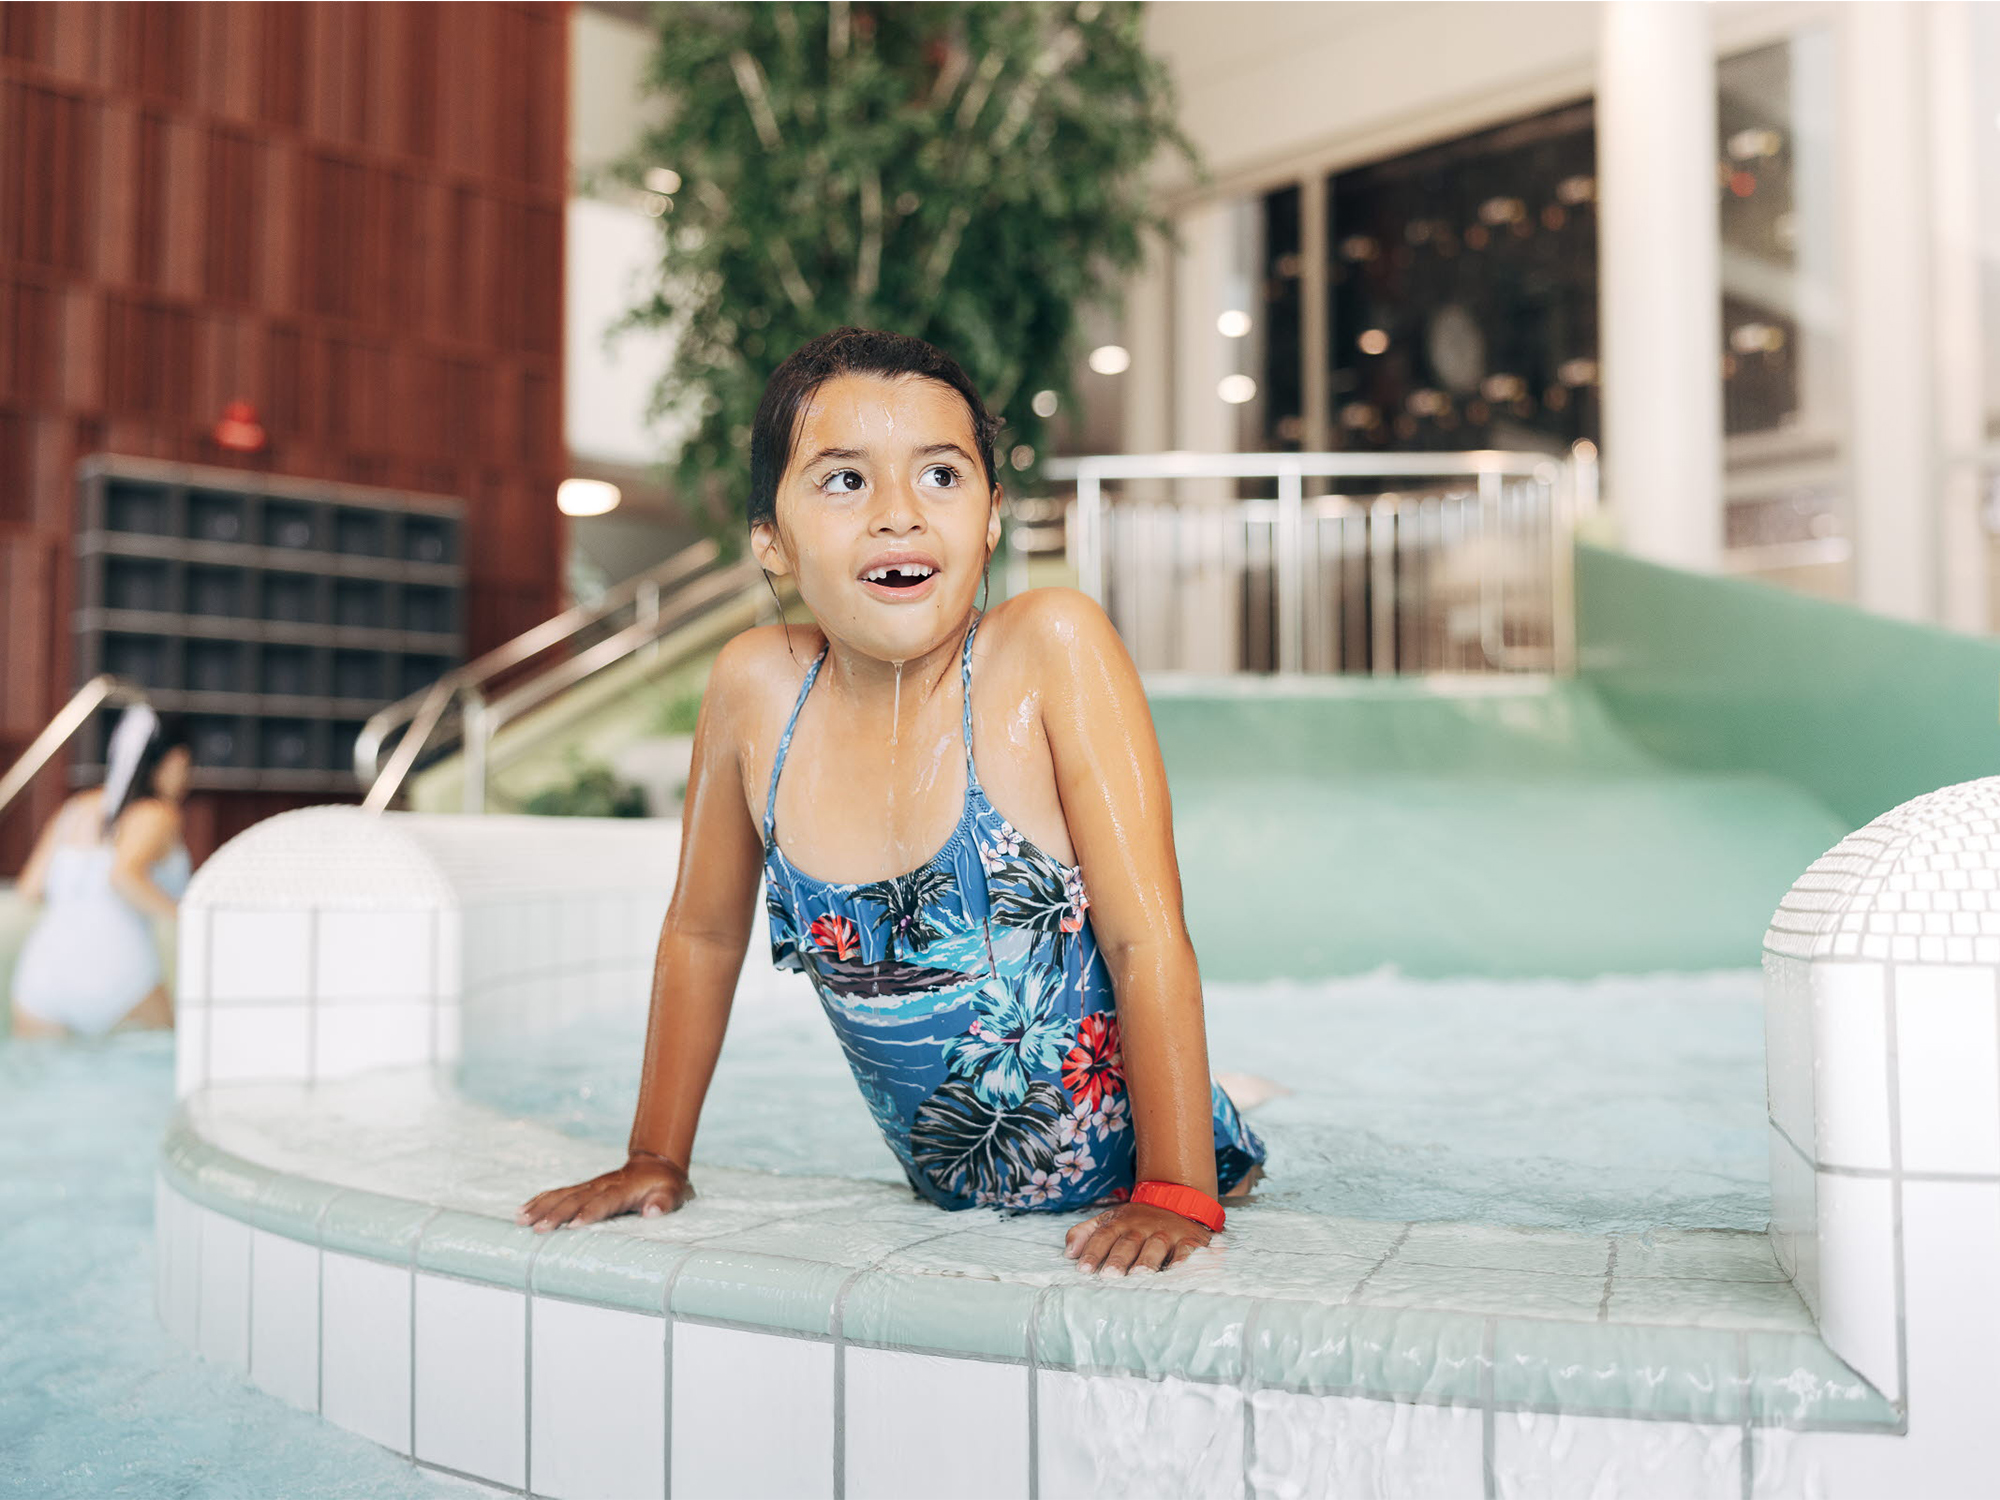 En barn badar i en liten pool på Nolhaga parkbad utanför Göteborg.